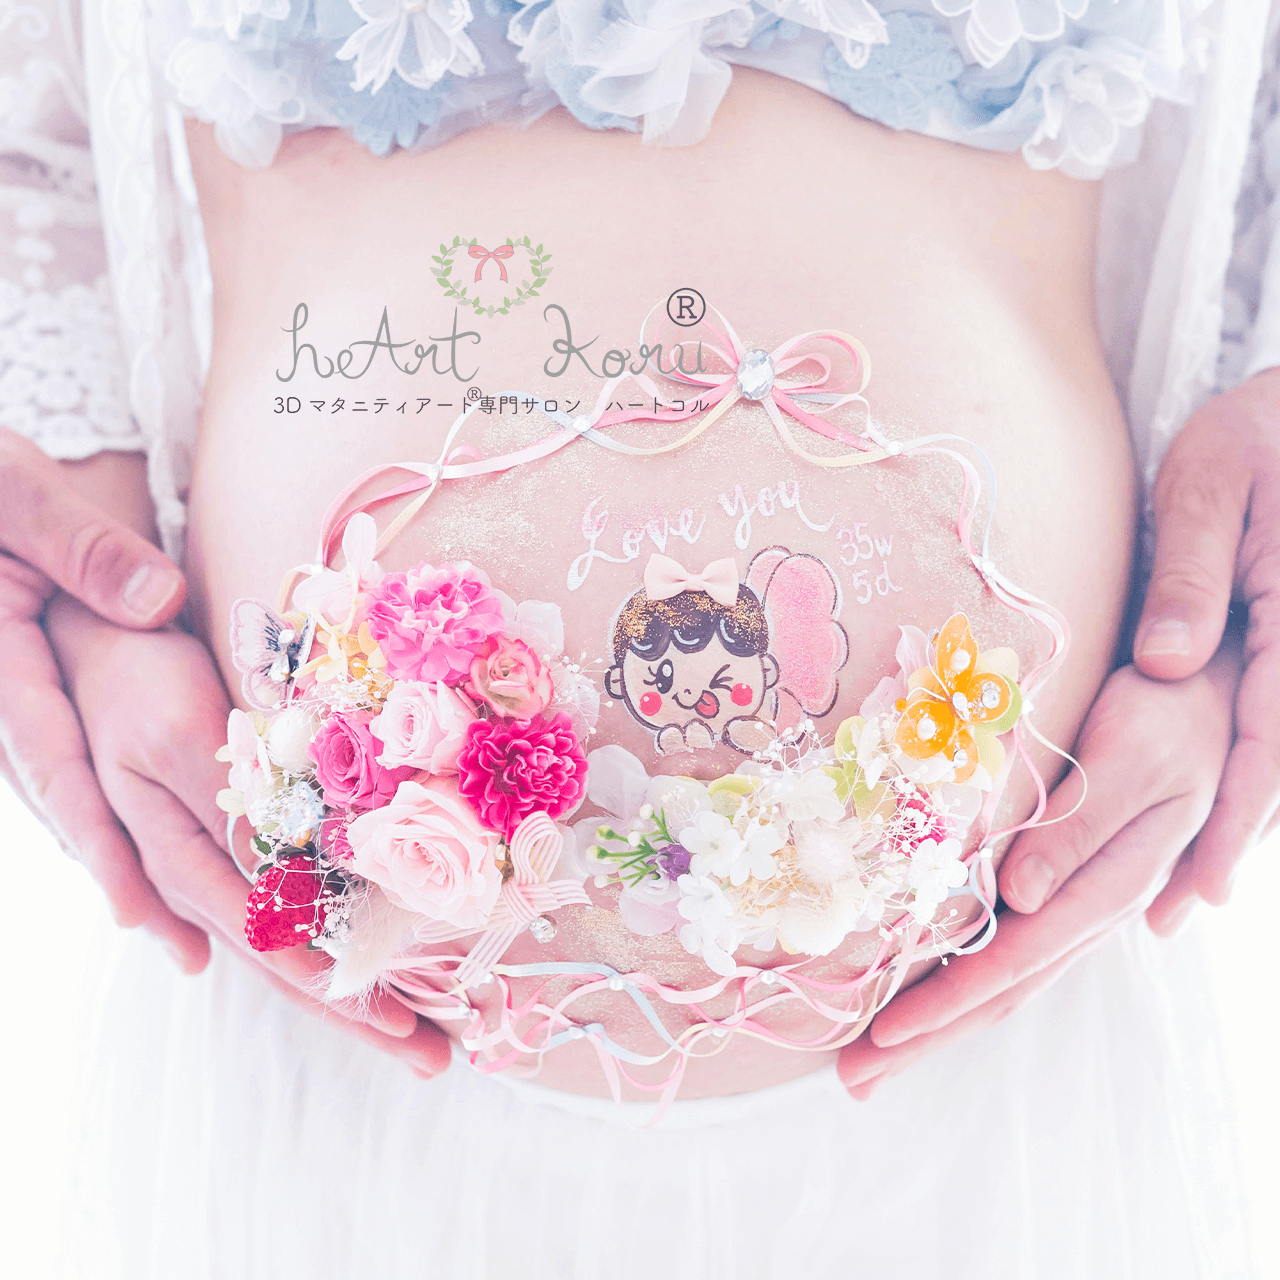 妊婦さんのまあるいお腹に、立体の3Dマタニティペイントが施されている。真ん中に赤ちゃんのイラストがあり、そこを囲むようにピンクやカラフルなお花たちが包み込んだマタニティペイントのデザイン。